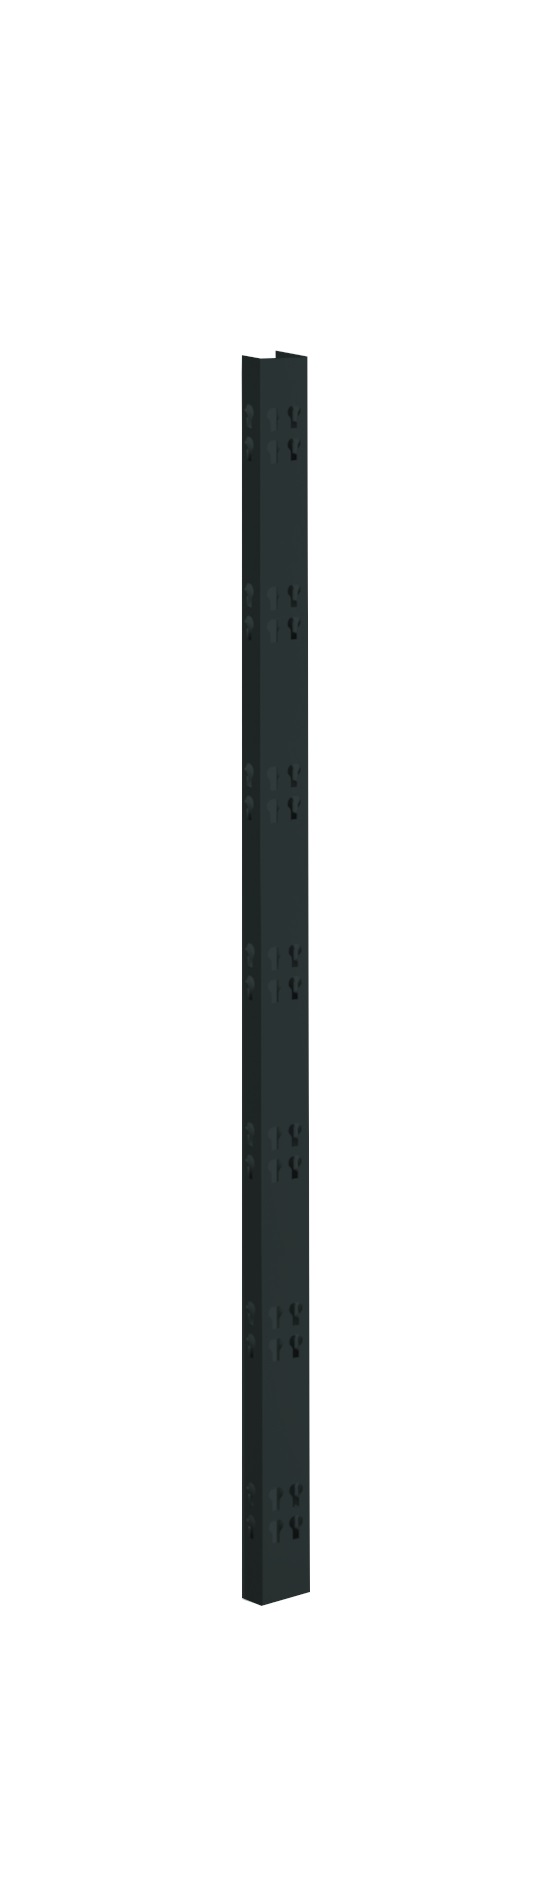 2 Profi-Stecksystem C-Holme, 105x4,2x2,8 cm (HxBxT), schwarz